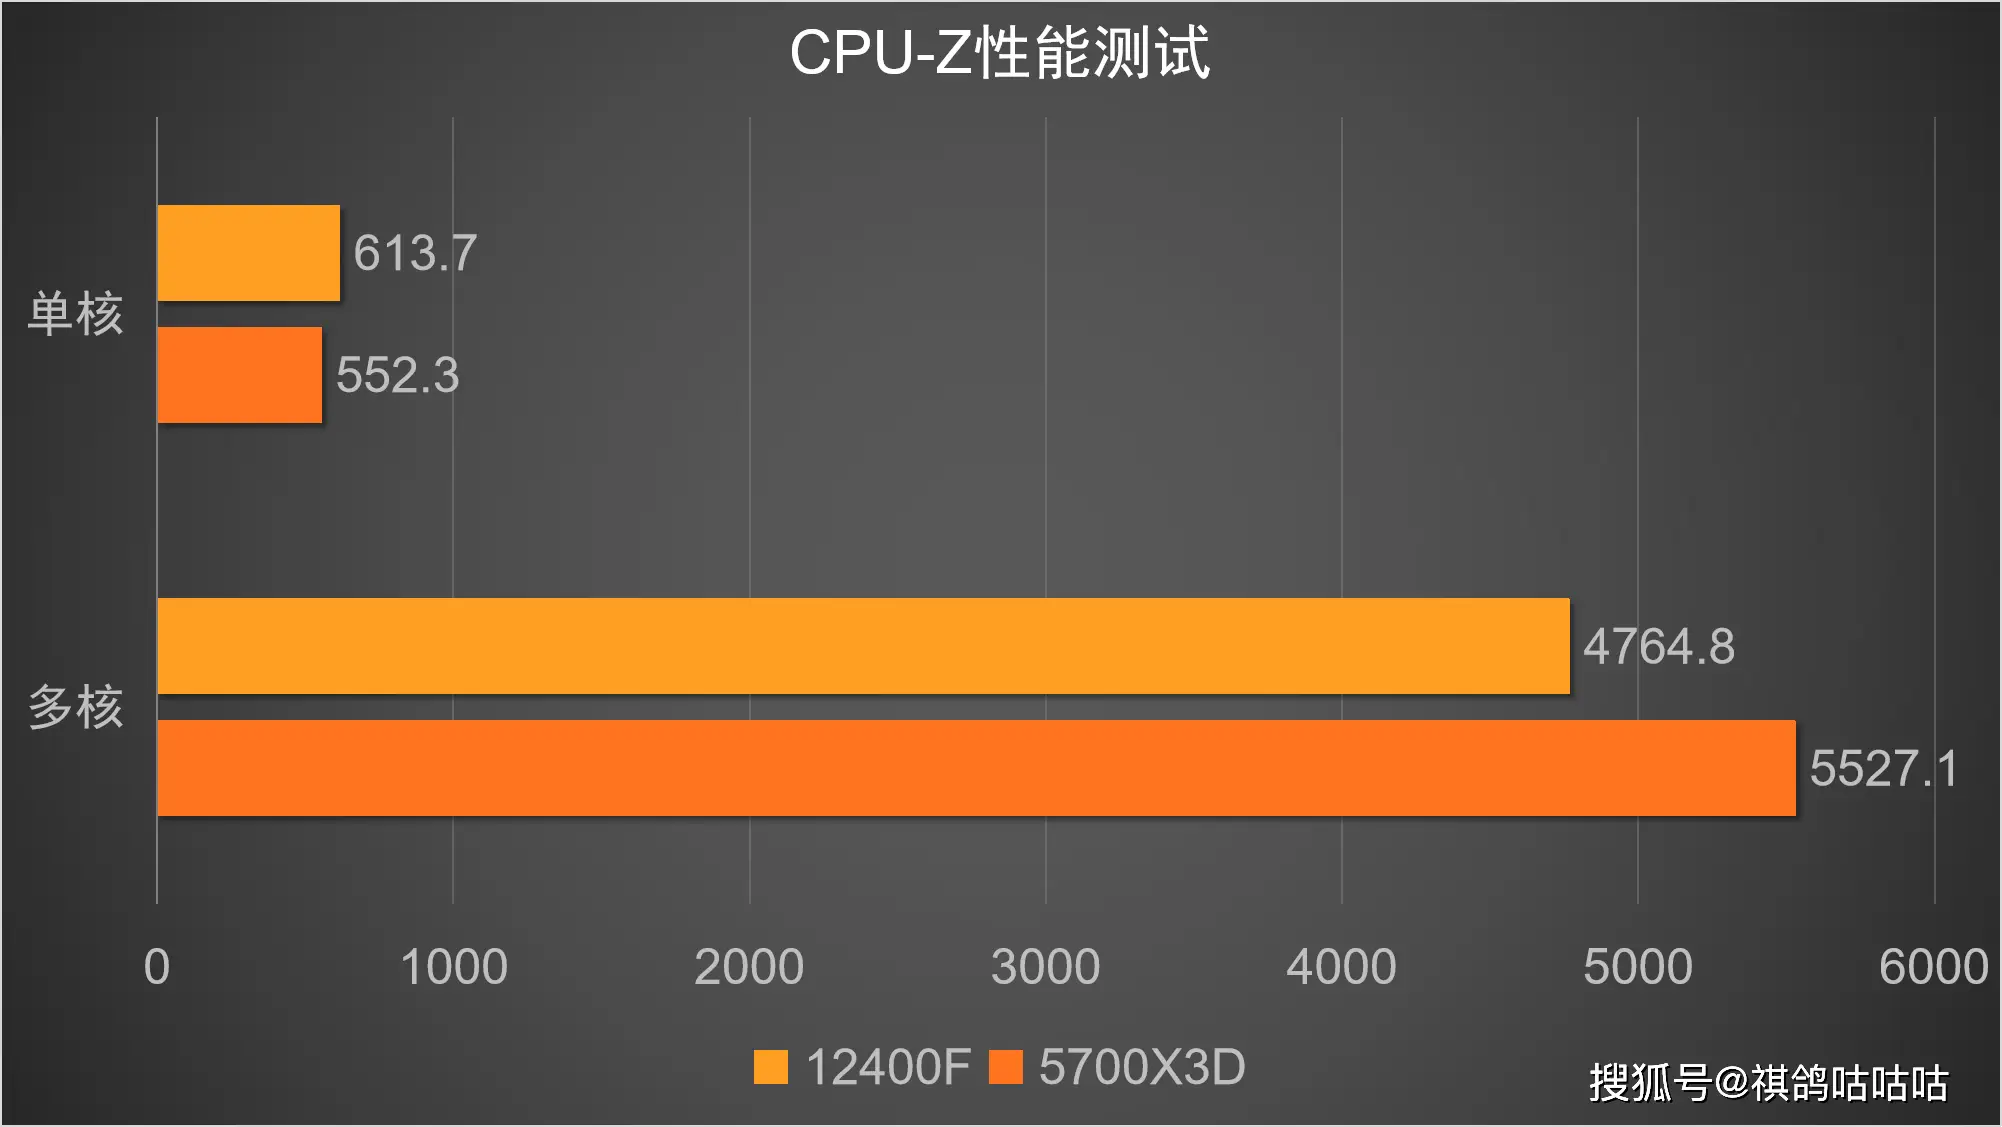 DDR4 内存价格居高不下，原因何在？市场供需和原材料成本上涨成关键因素  第7张